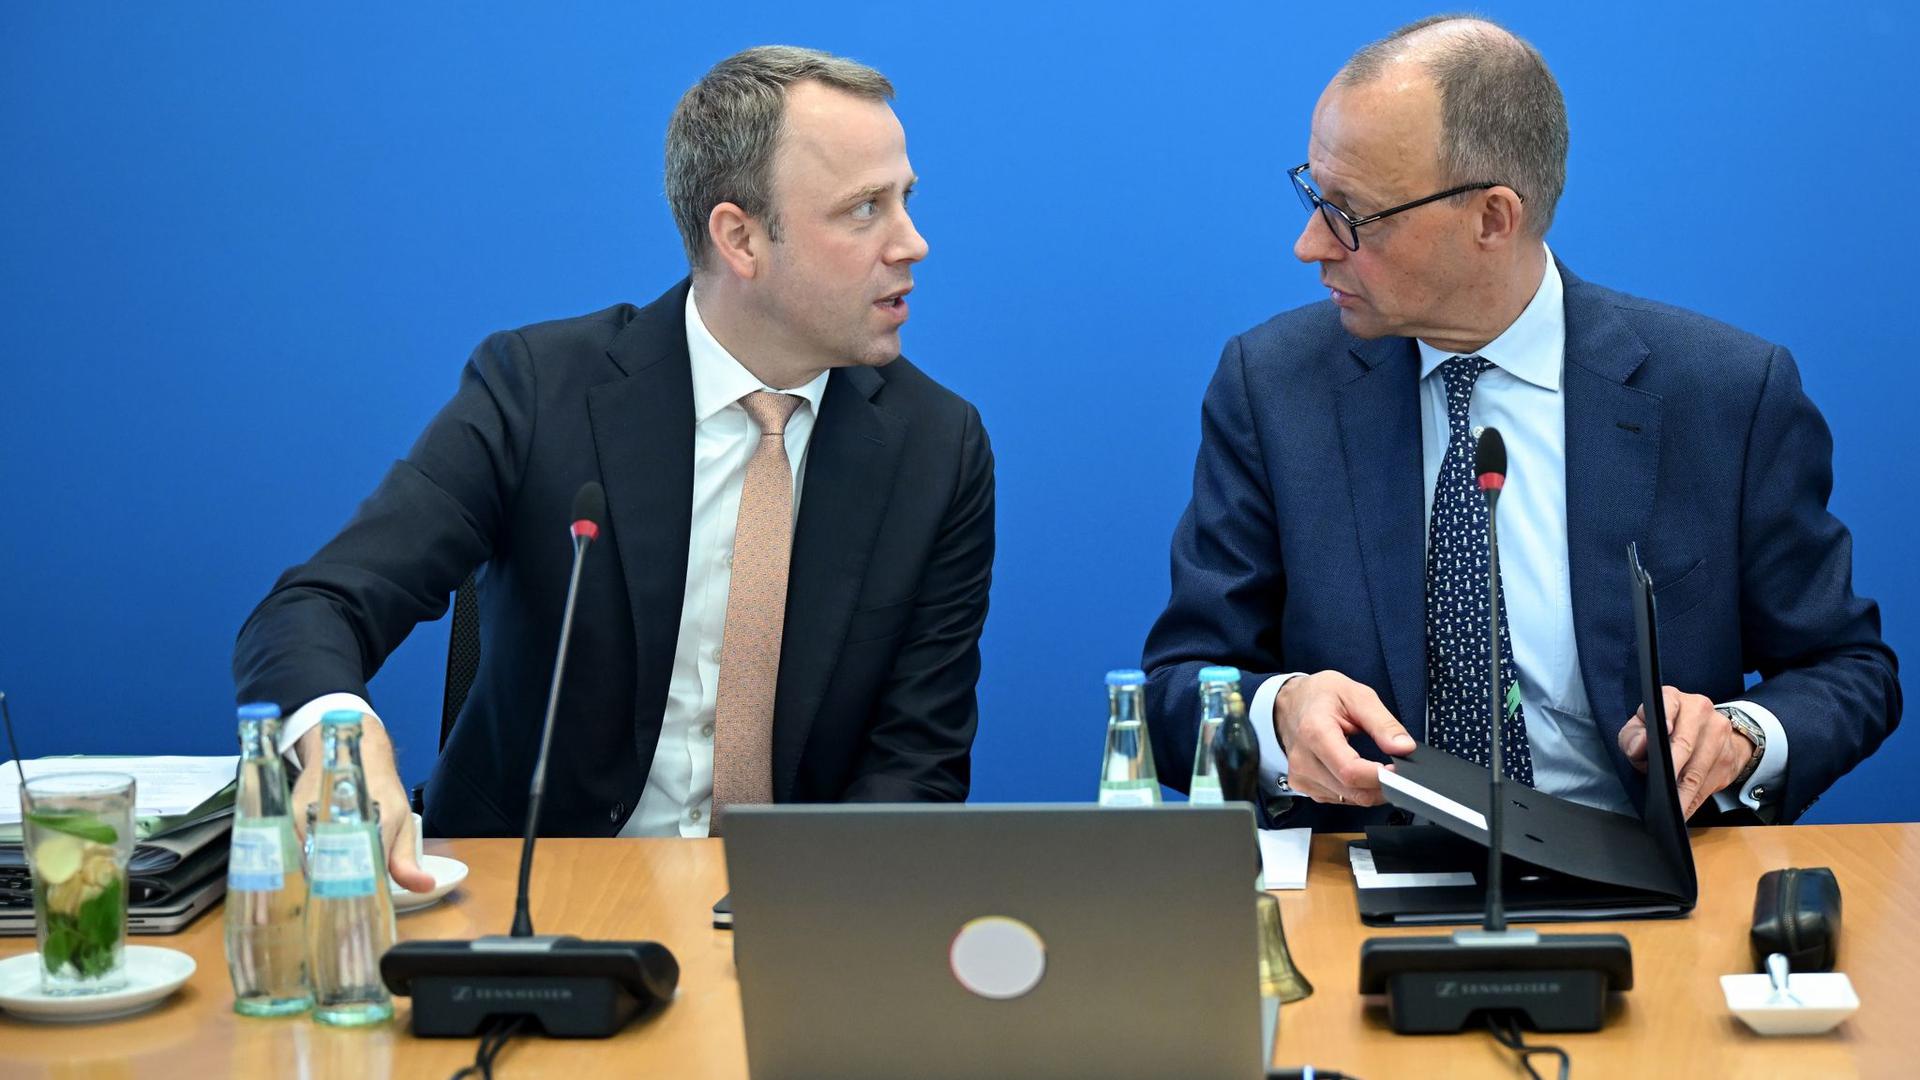 CDU Generalsekretär Mario Czaja (l) und Friedrich Merz, CDU-Bundesvorsitzender, in Berlin.